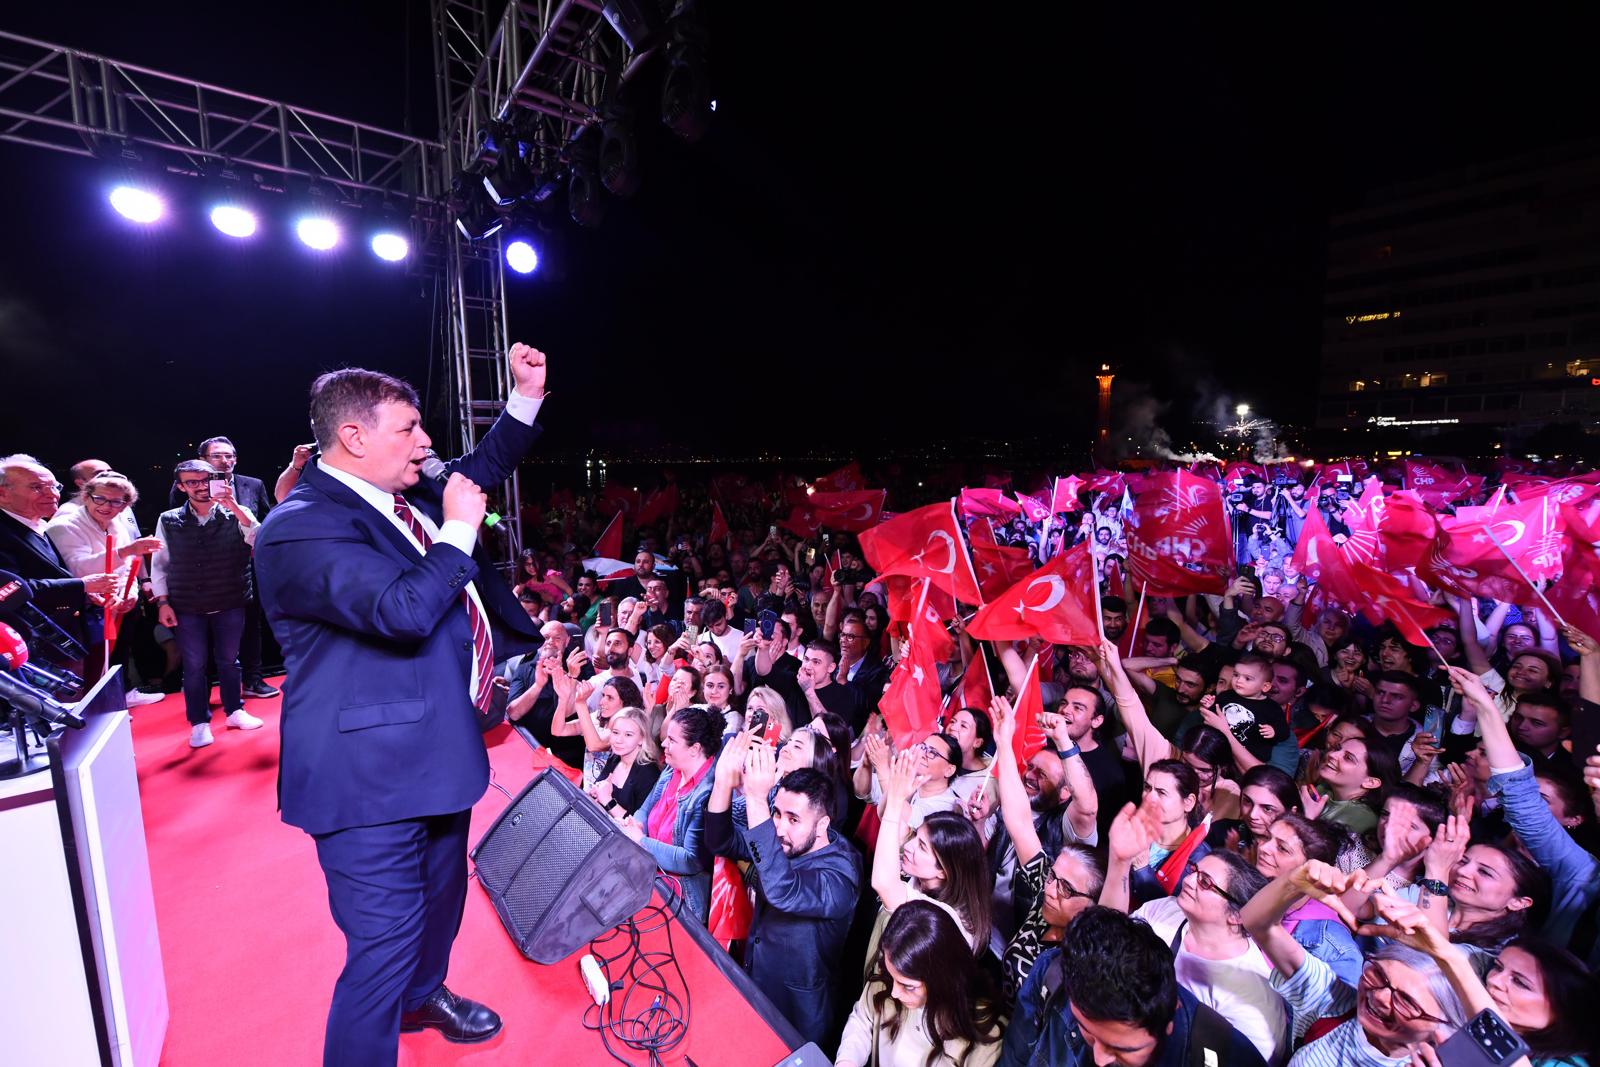 Cemil Tugay Cumhuriyet Meydanı'nda binlerce yurttaşla birlikte kutladı